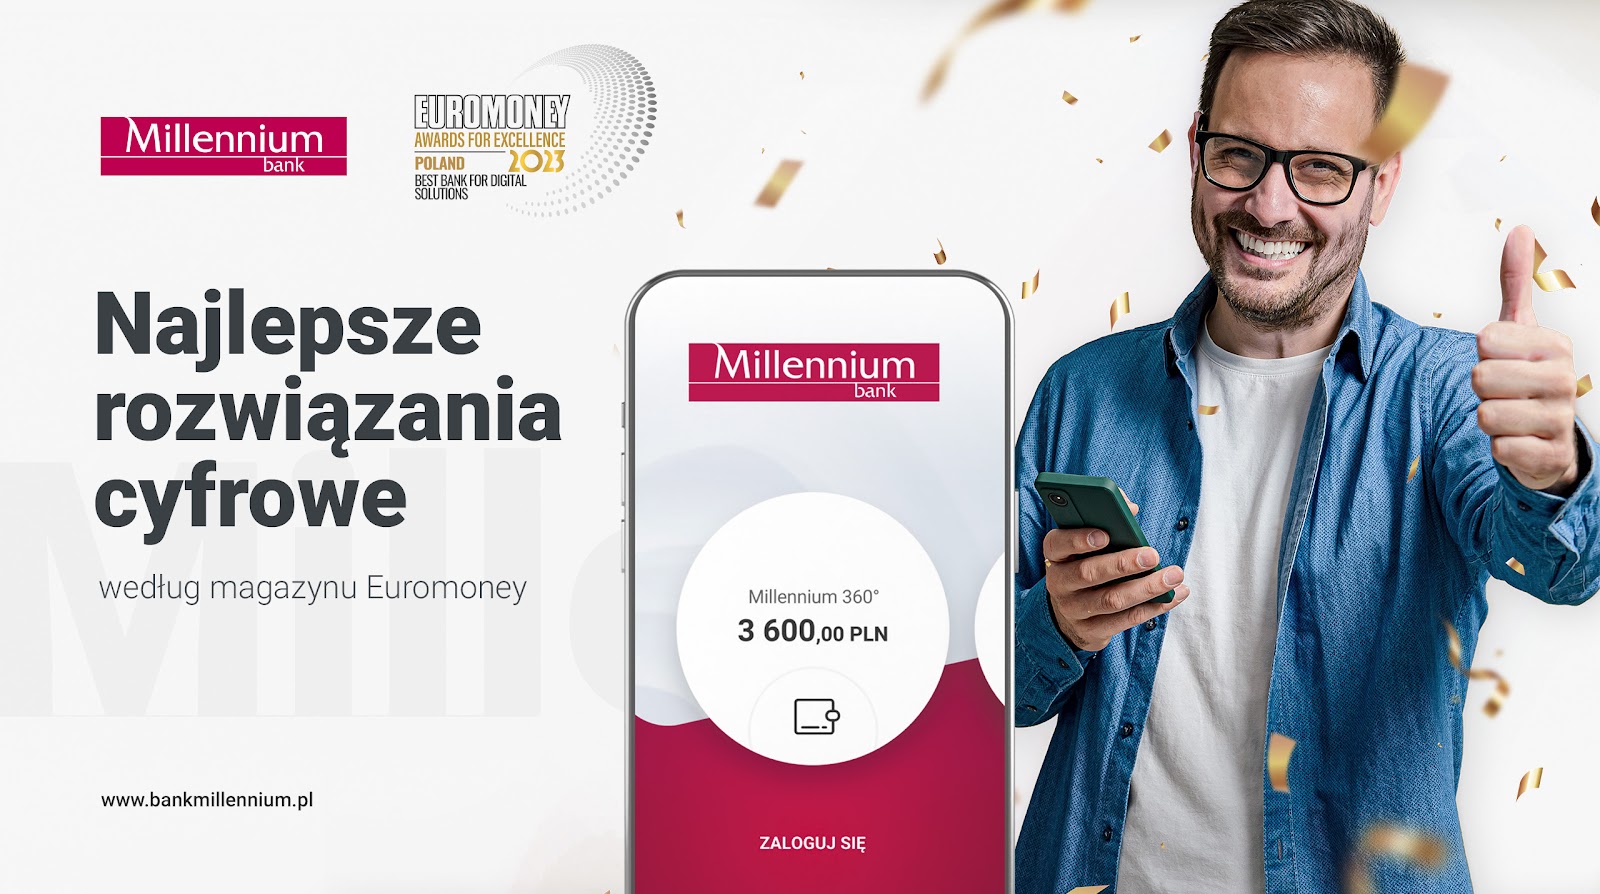 Najlepsze rozwiązania cyfrowe w Polsce - Millennium z nagrodą